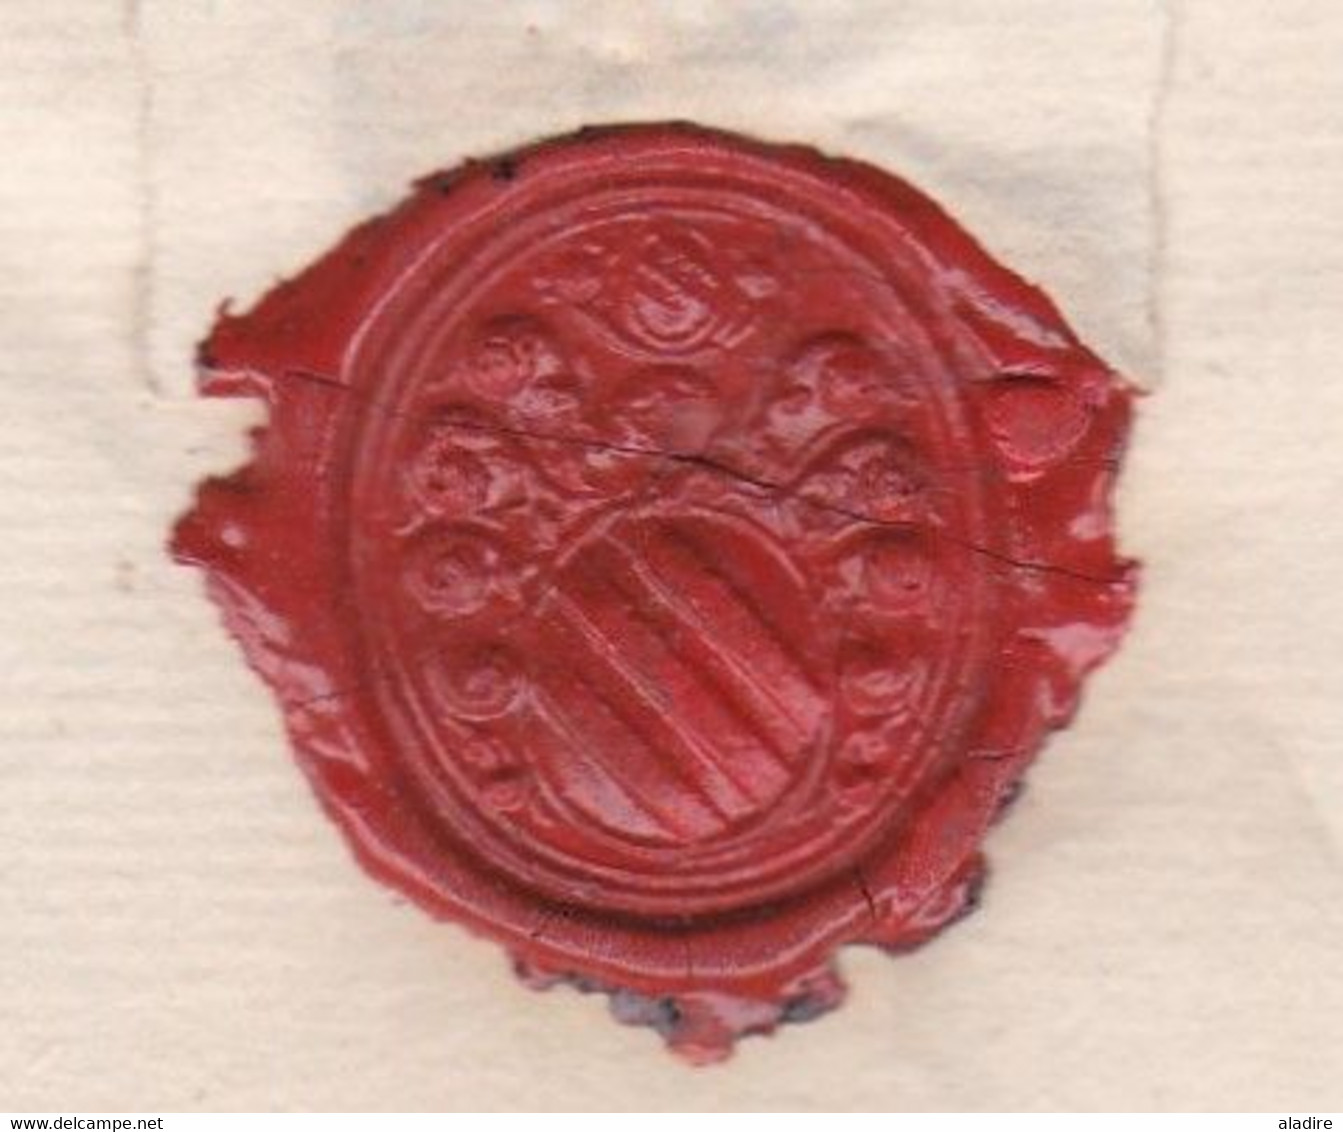 1760 - Marque Postale BRUXELLES Sur Lettre Pliée Avec Correspondance Familiale En Français Vers Bruges - 1714-1794 (Paises Bajos Austriacos)